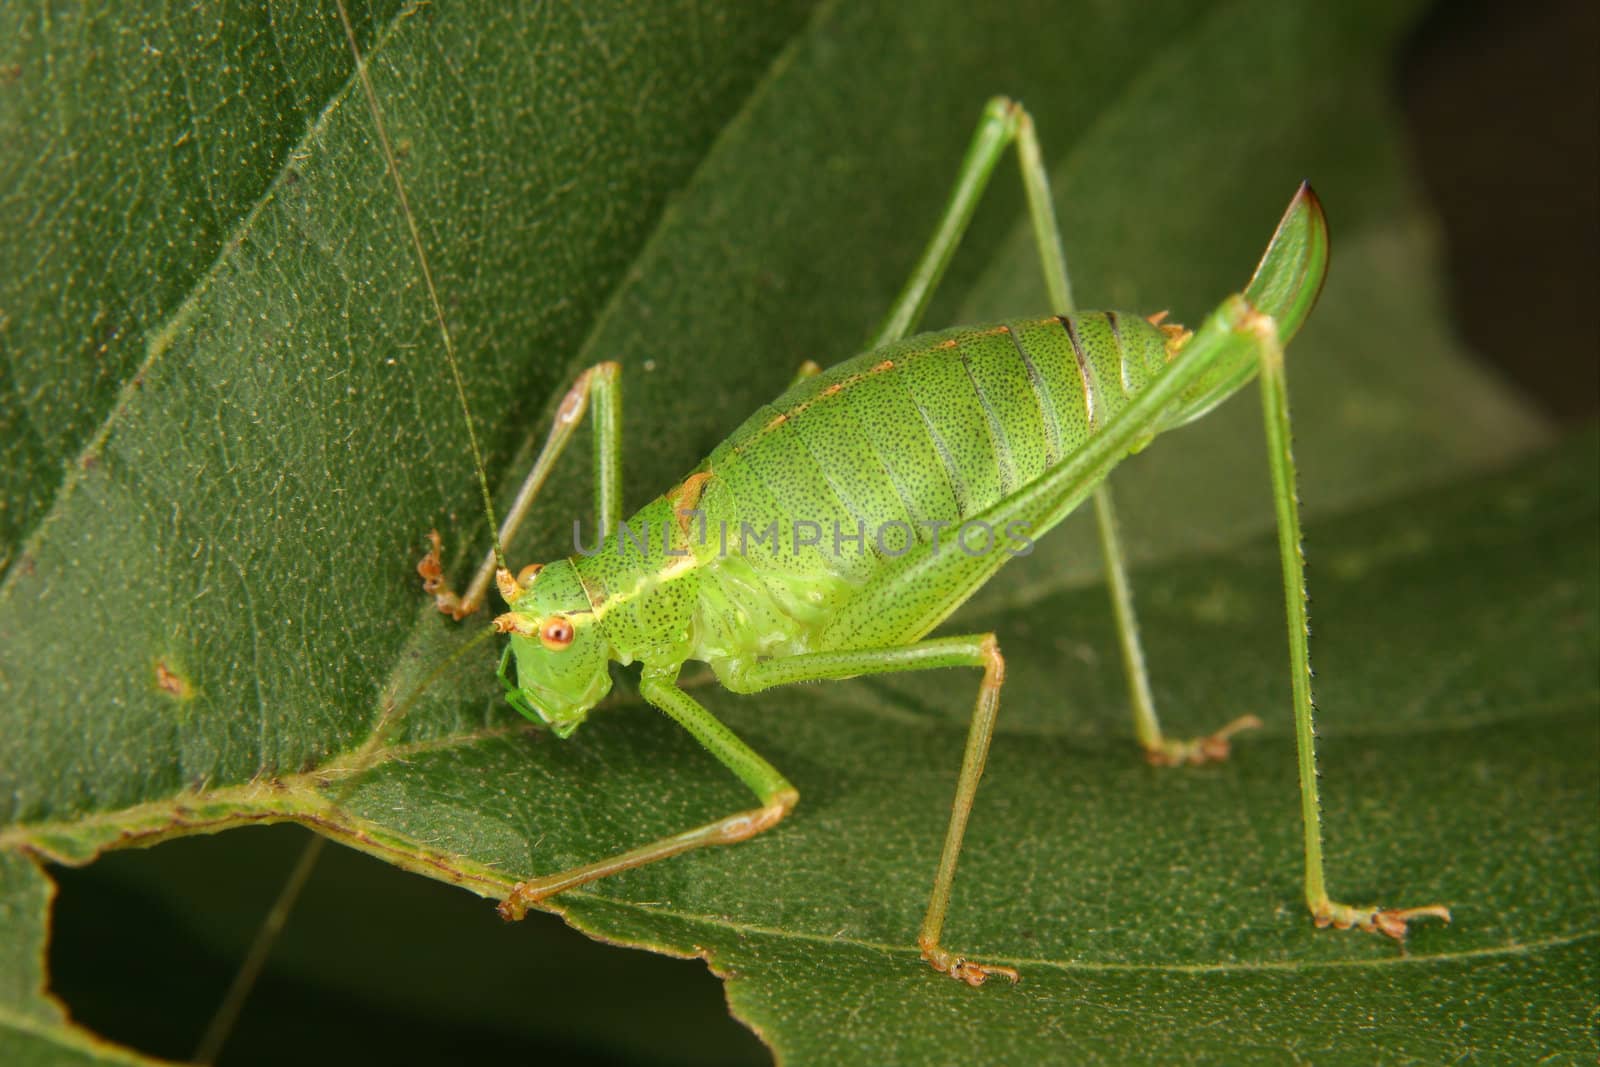 Female of a speckled bush-cricket (Leptophyes punctatissima) on a leaf